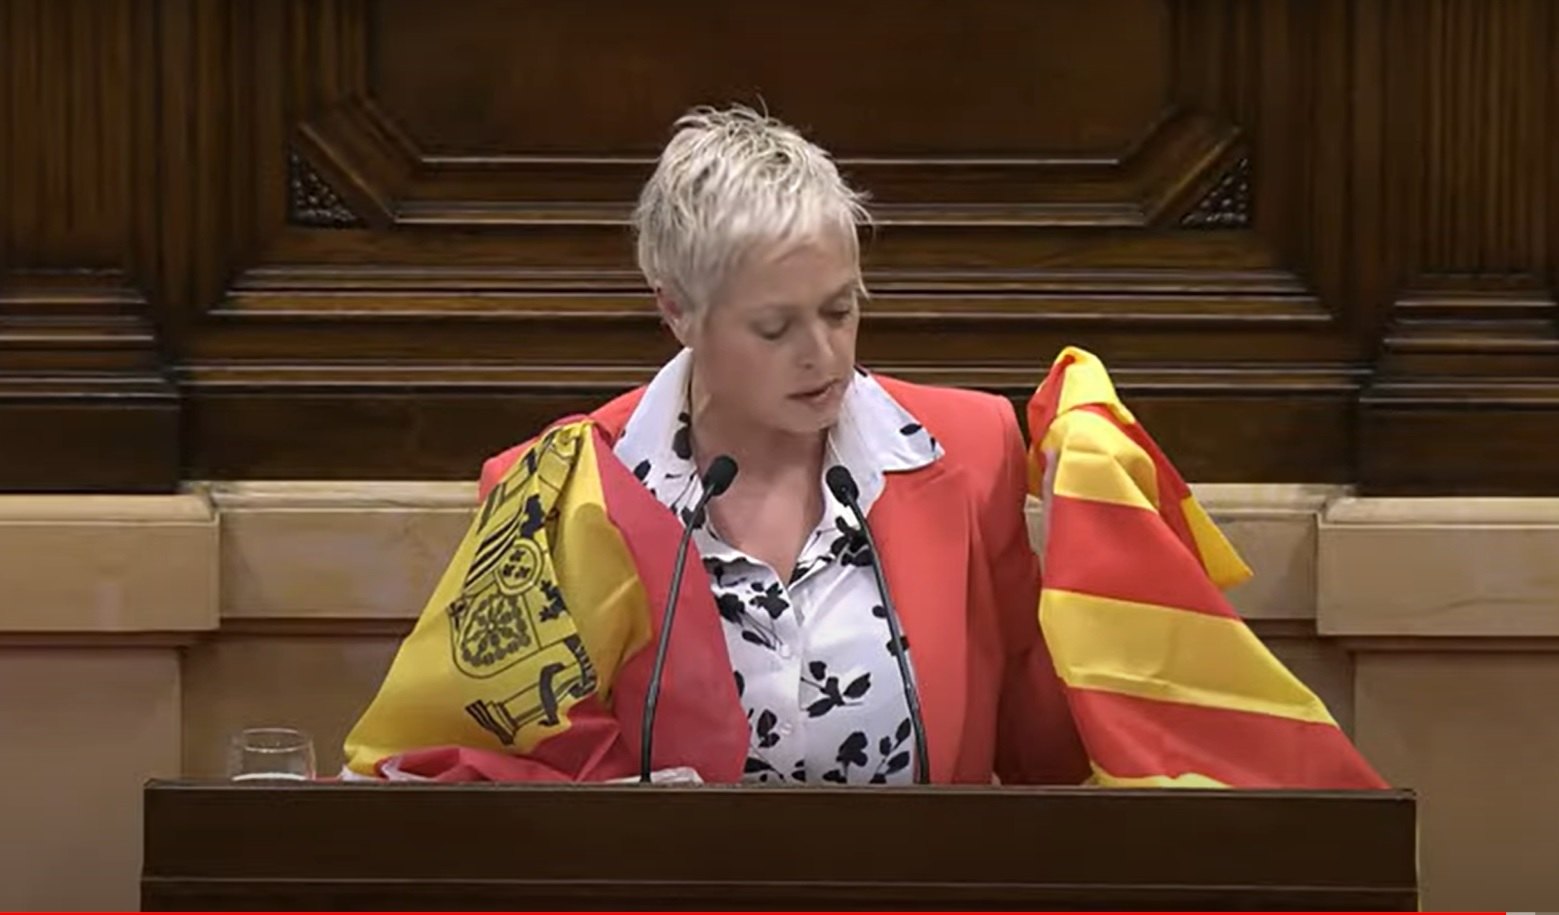 Choque entre Anna Erra y Anna Grau por poner dos banderas en el atril del Parlament